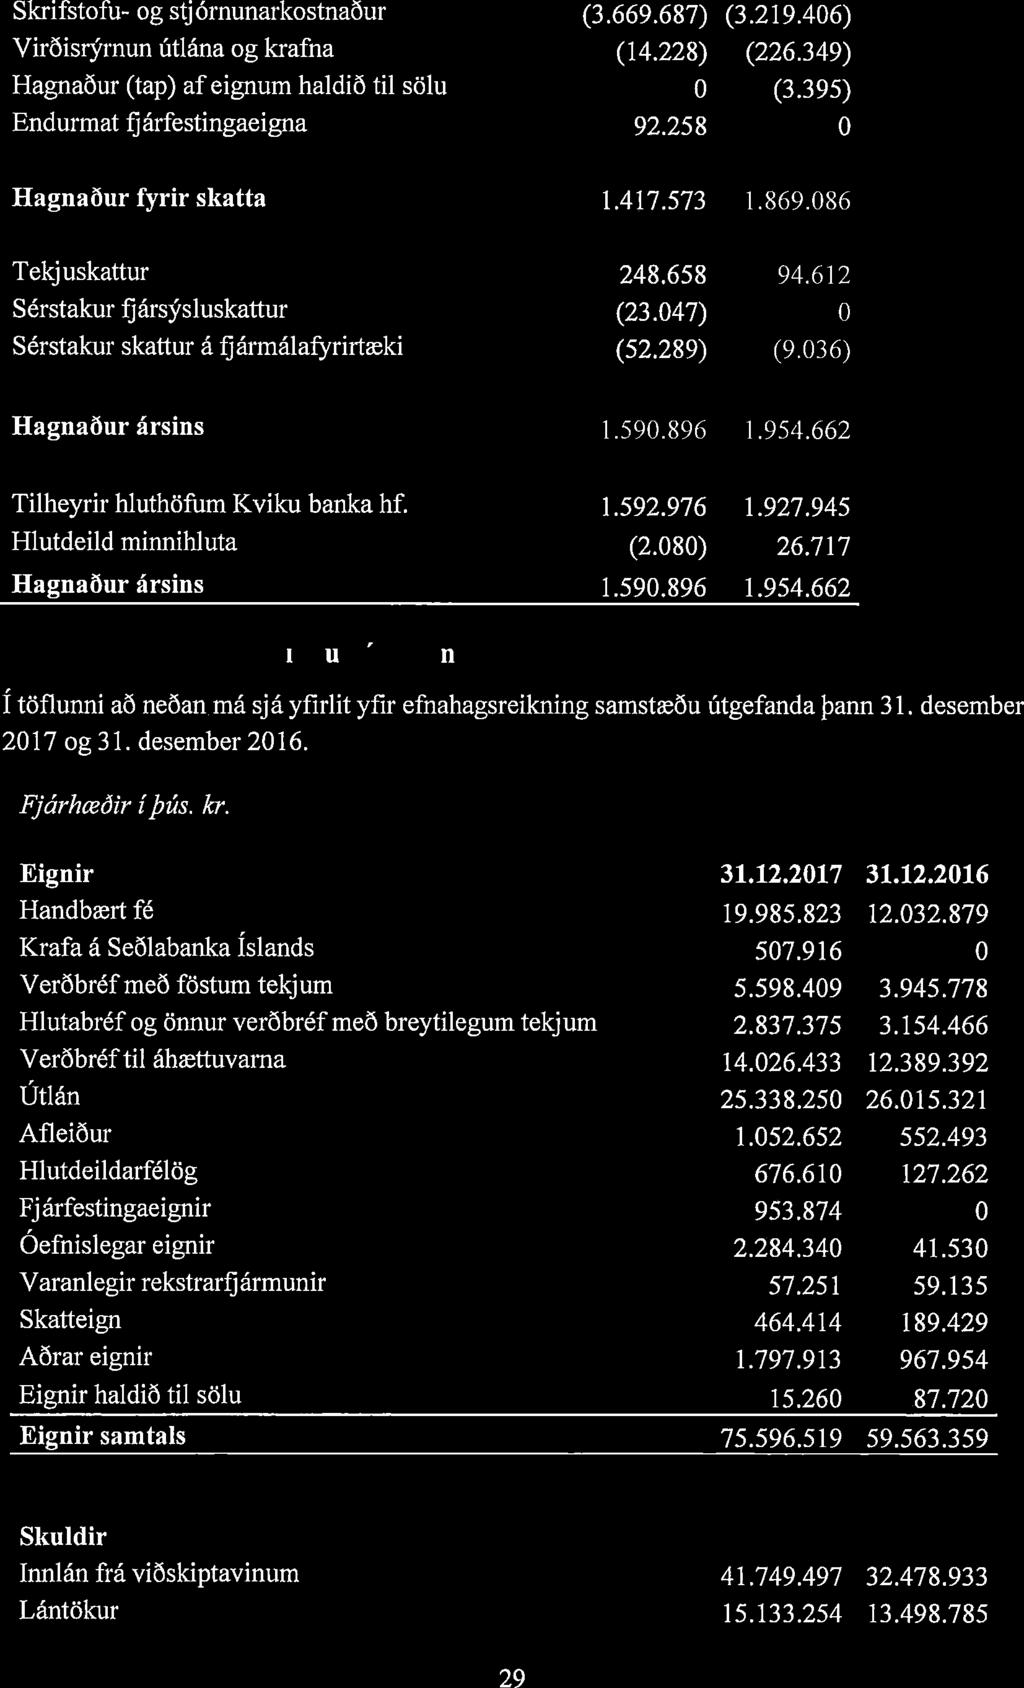 41 1 1 Skrifstofu- og stjórnunarkostnaður (3.669.687) (3.219.406) Virðisrýrnun Citlána og krafna (14.228) (226.349) Hagnaður (tap) af eignum haldið til solu 0 (3.395) Endurmat fjárfestingaeigna 92.